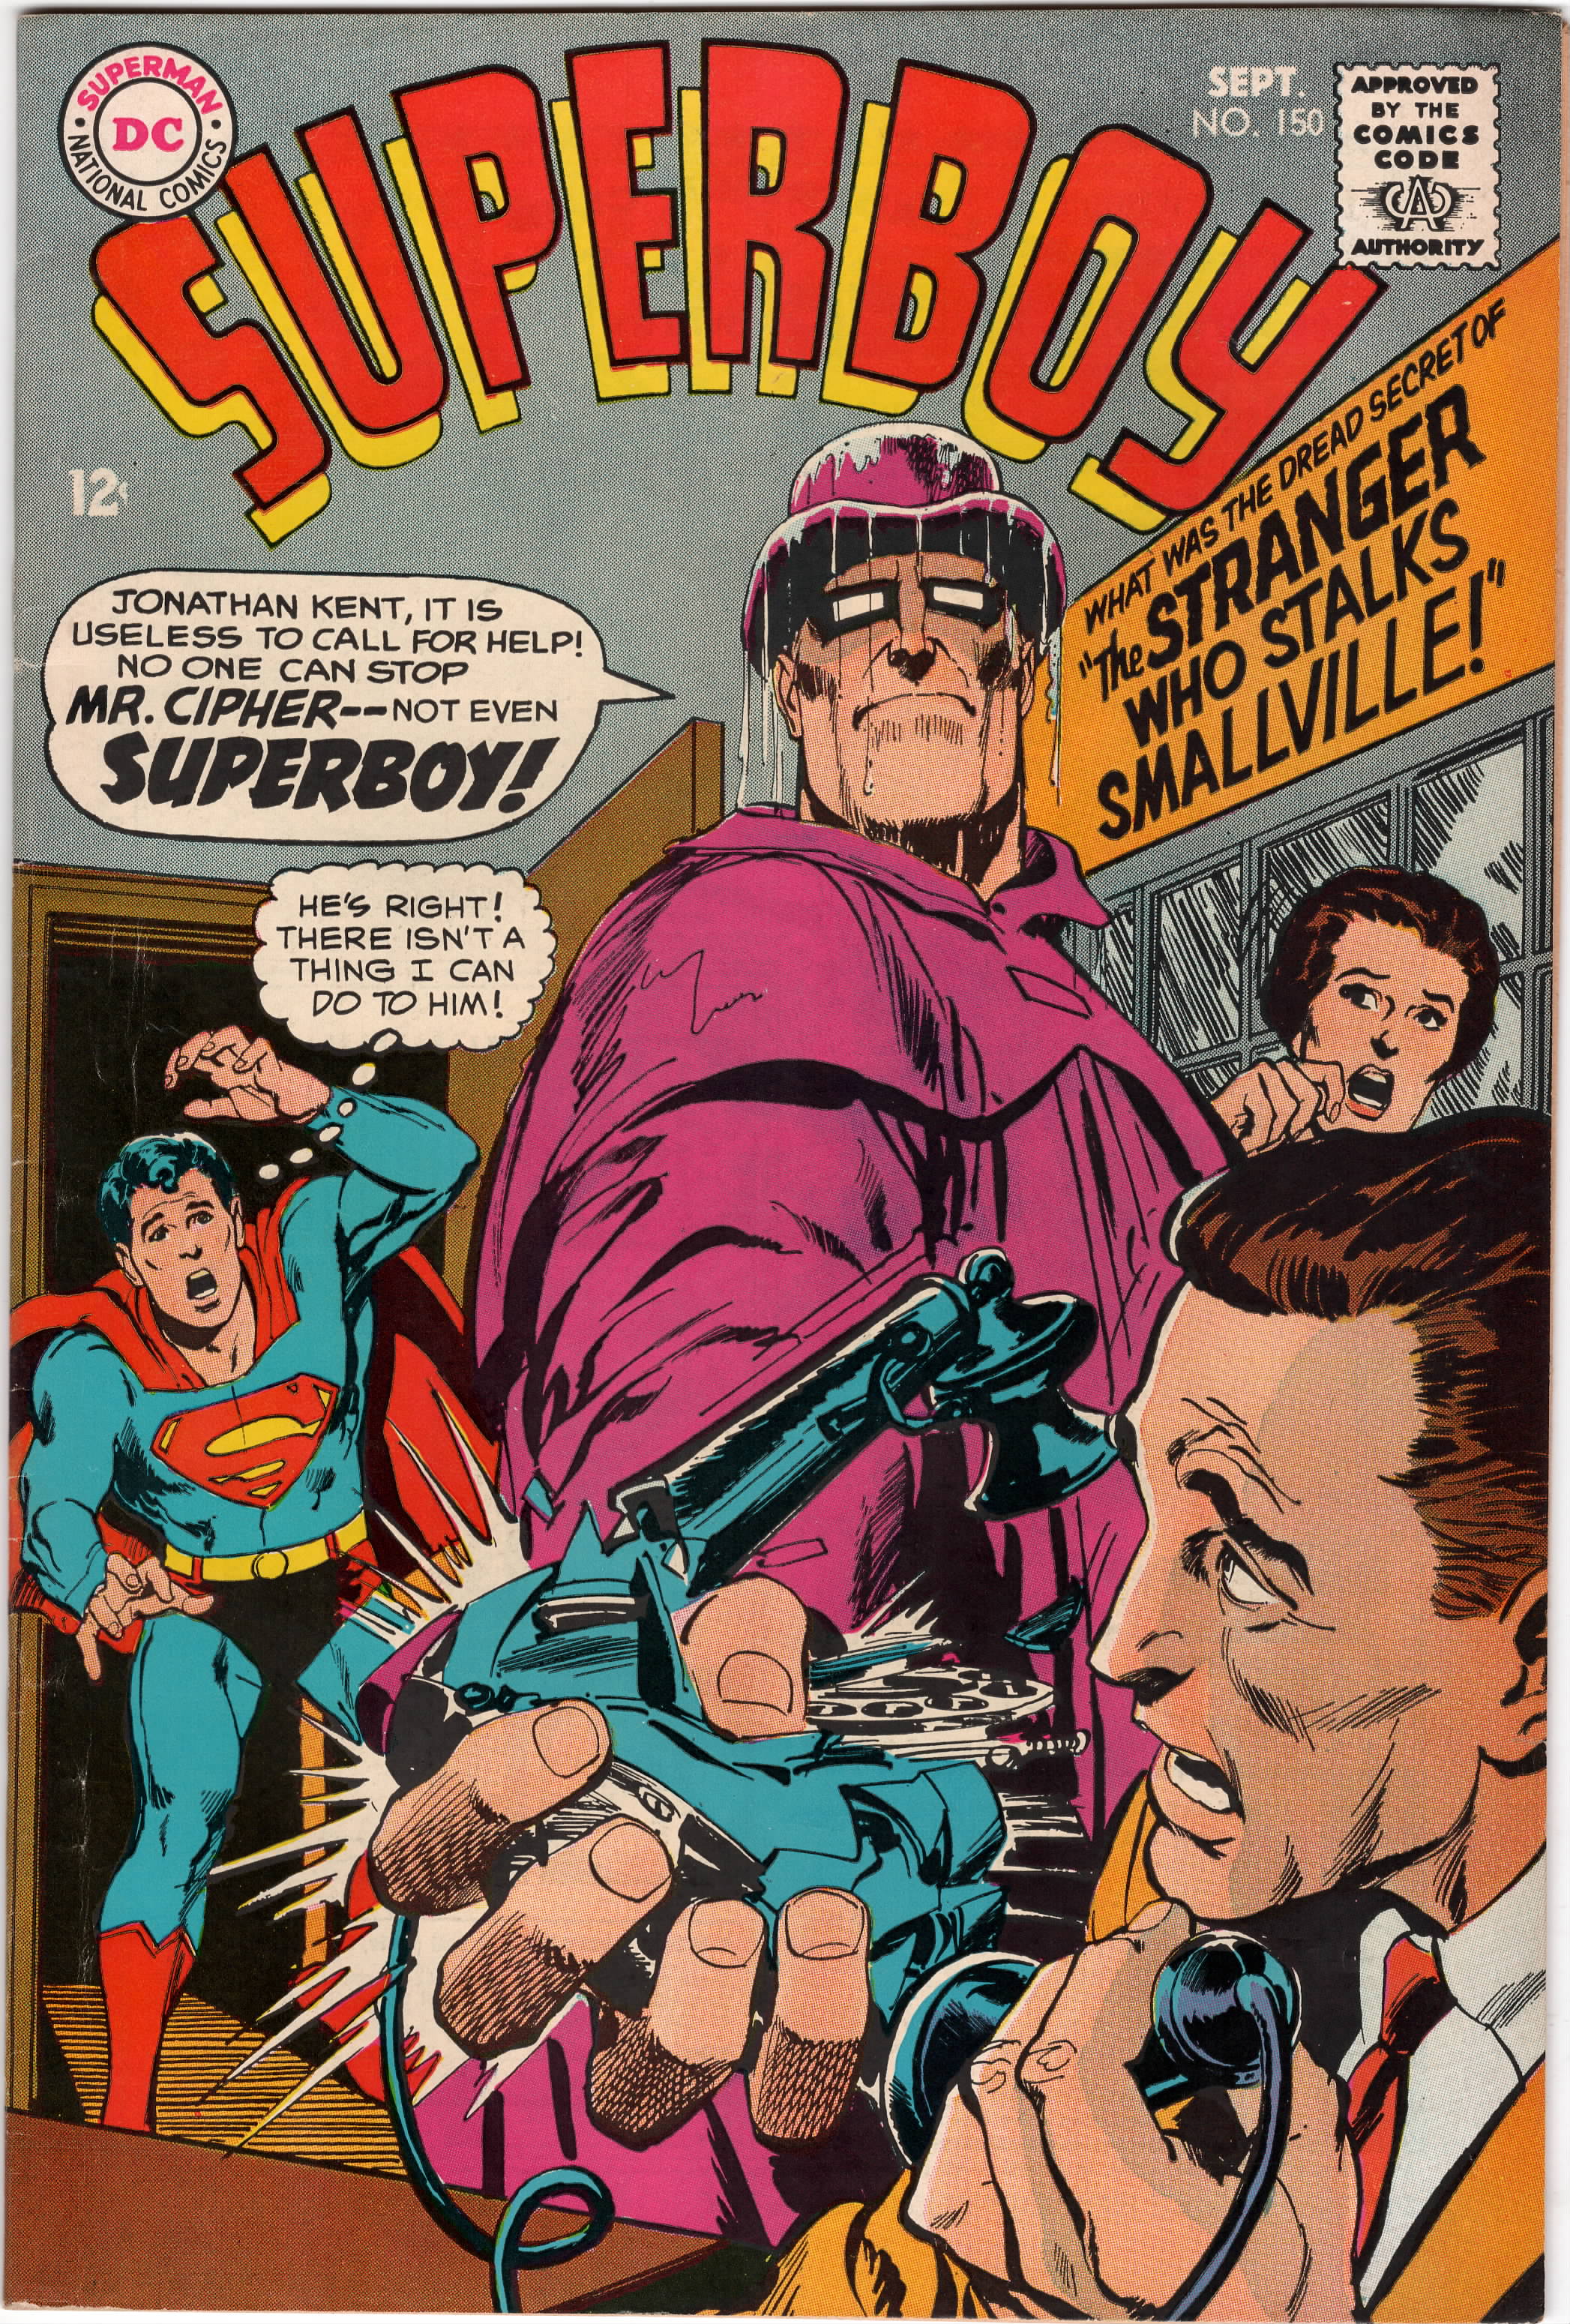 Superboy #150